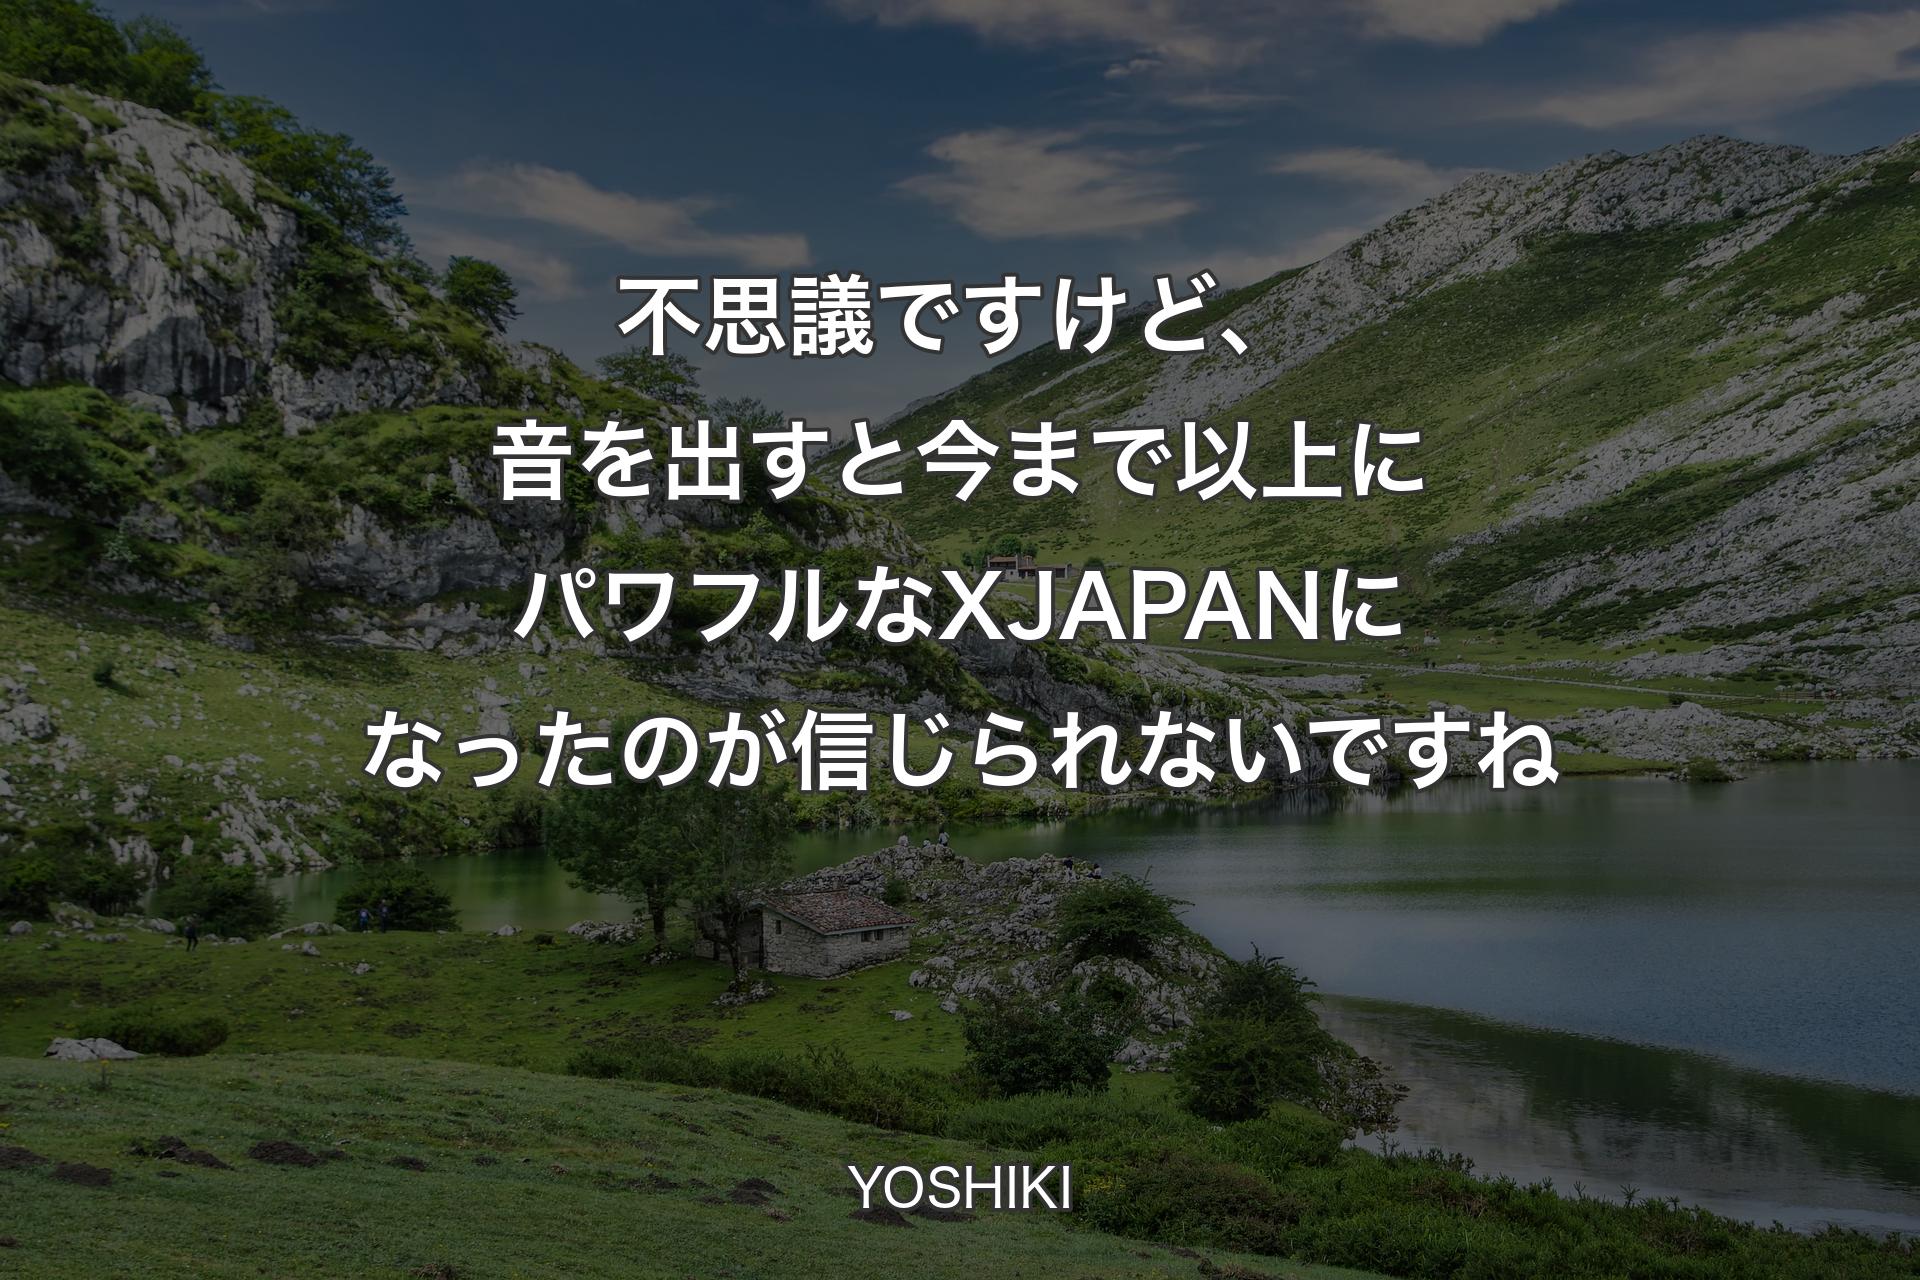 【背景1】不思議ですけど、音を出すと今まで以上にパワフルなX JAPANになったのが信じられないですね - YOSHIKI